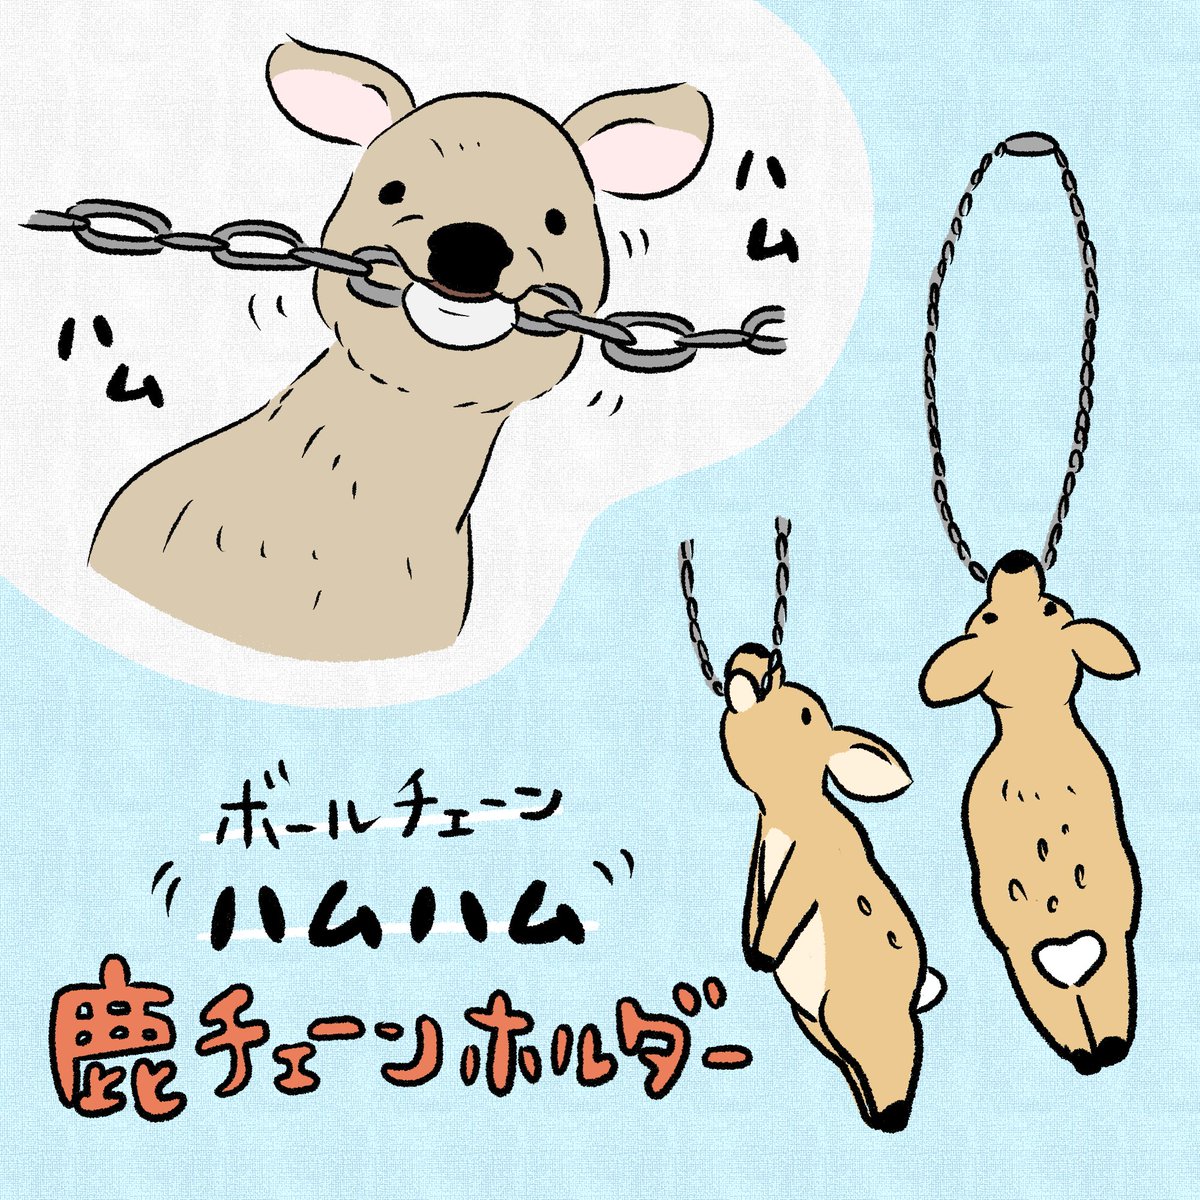 チェーンを噛む奈良公園の鹿さん(https://t.co/bCS80ctfbT)が可愛いなぁと思って、以前考えた奈良グッズのボツ案🦌 